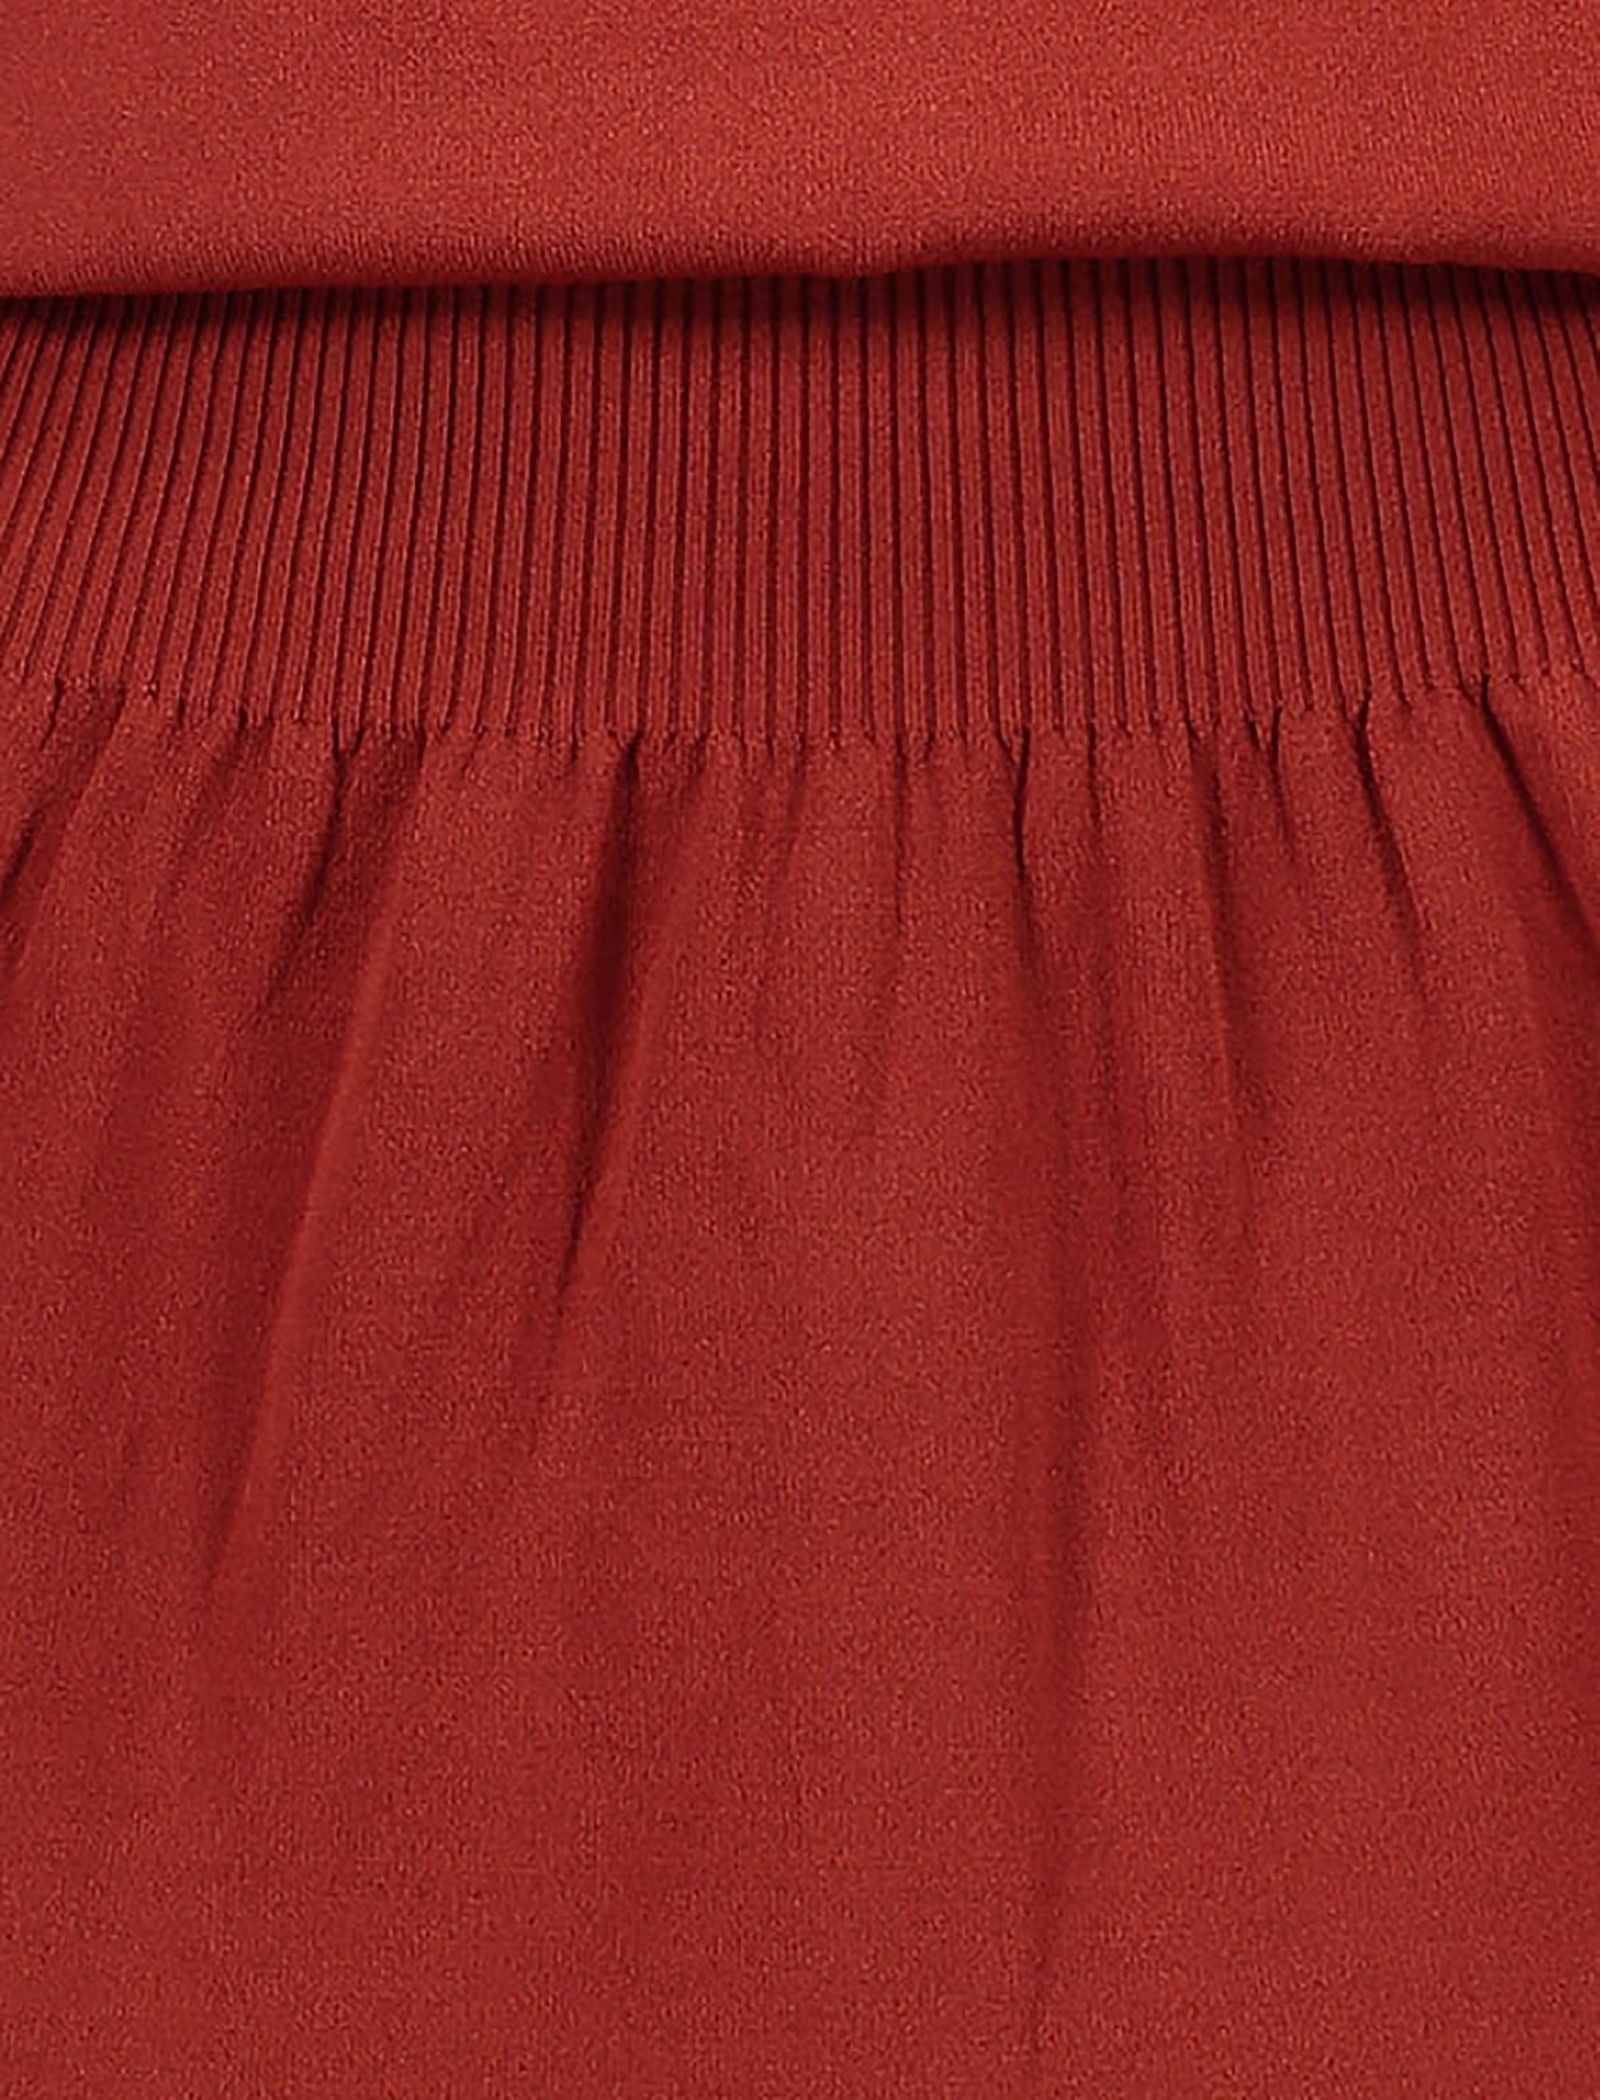 پیراهن کوتاه زنانه - یاس - قرمز - 6